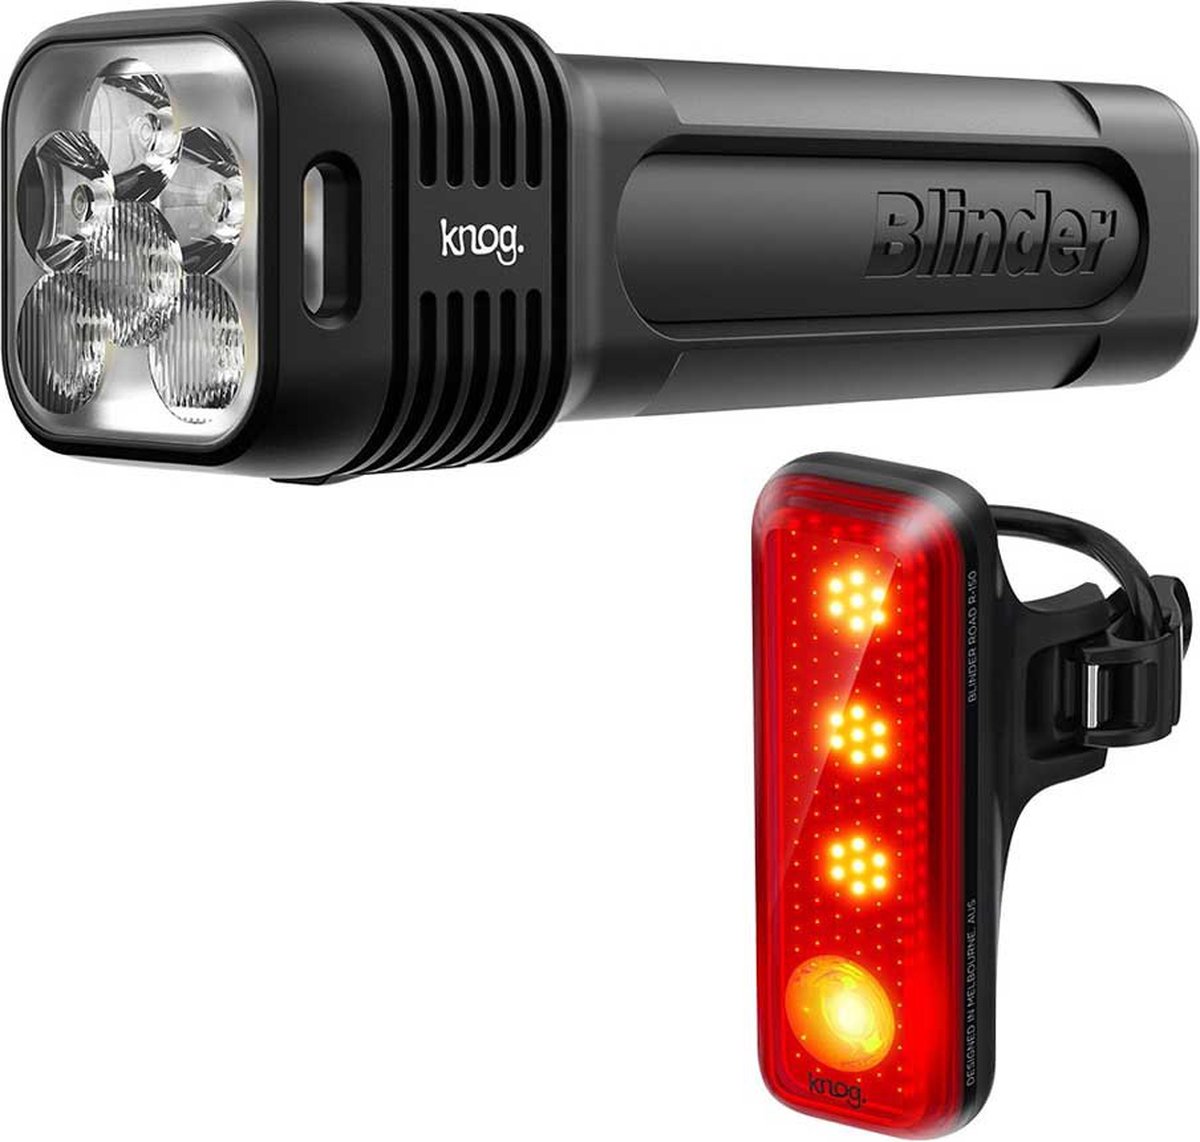 Knog Blinder 1300 + Blinder R-150 Licht Set Transparant 1300 / 150 Lumens